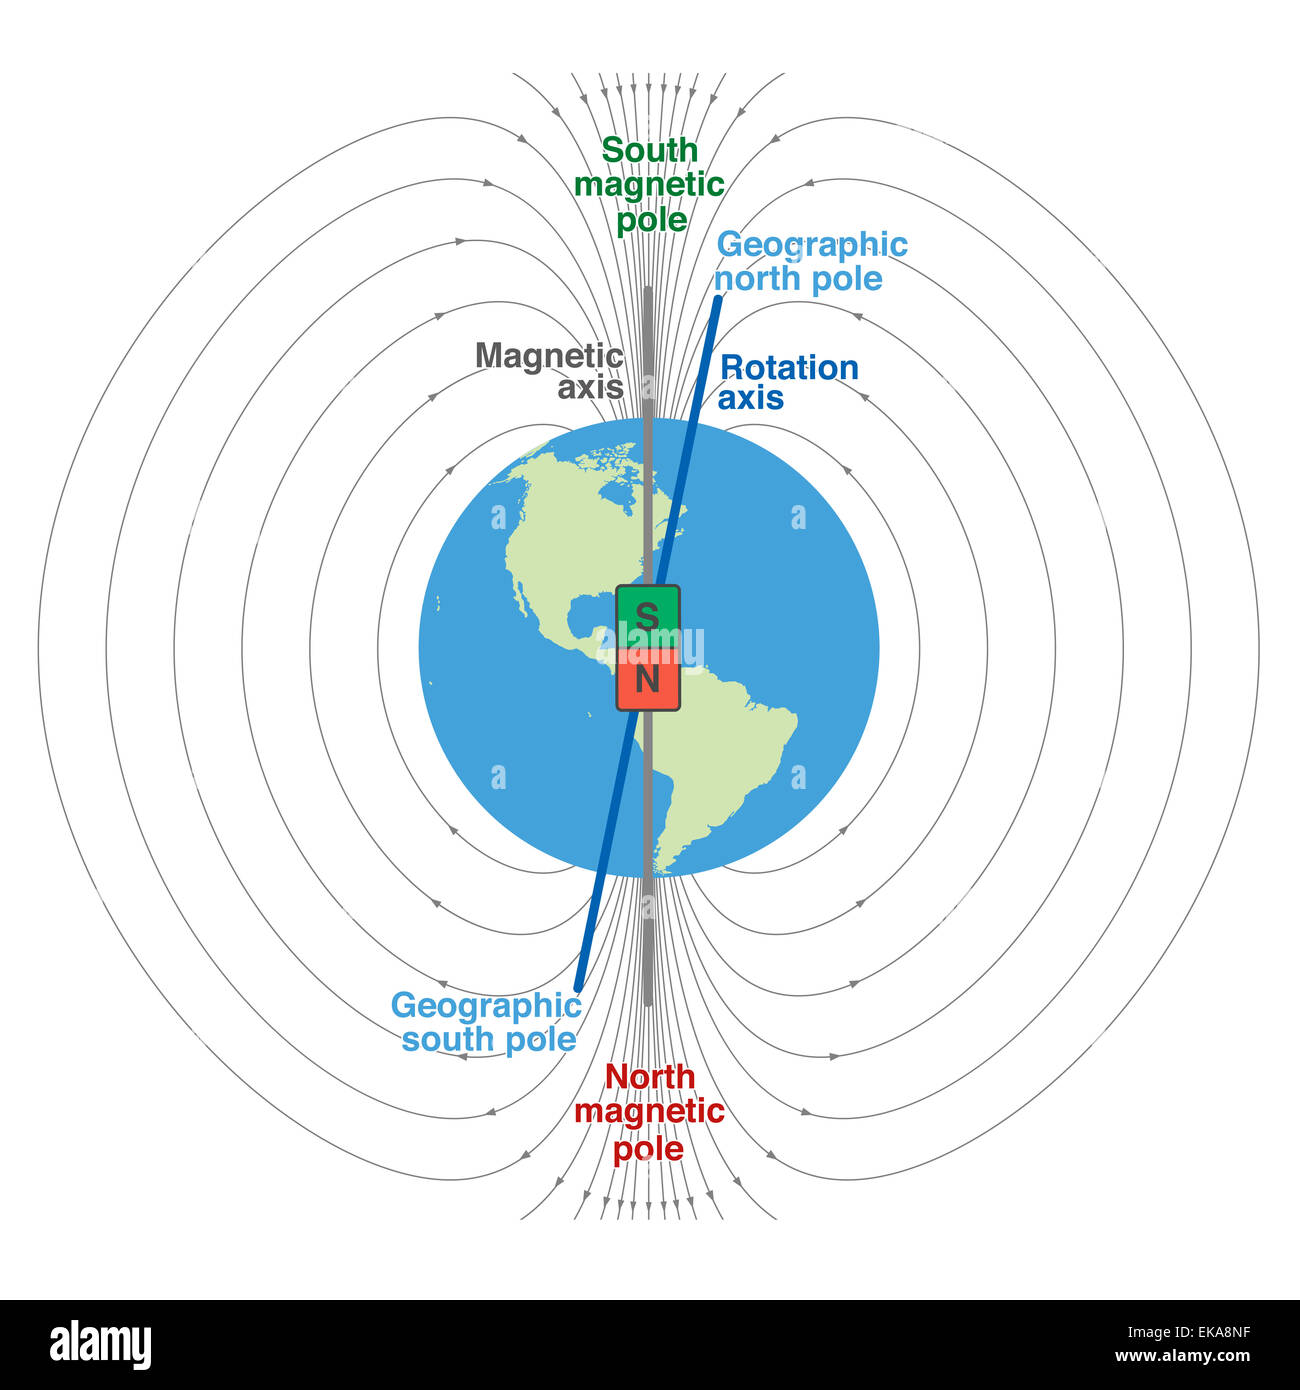 Geomagnetische Feld der Erde - wissenschaftliche Darstellung mit geographischen und magnetischen Nordpol und Südpol, magnetische Achse und ro Stockfoto